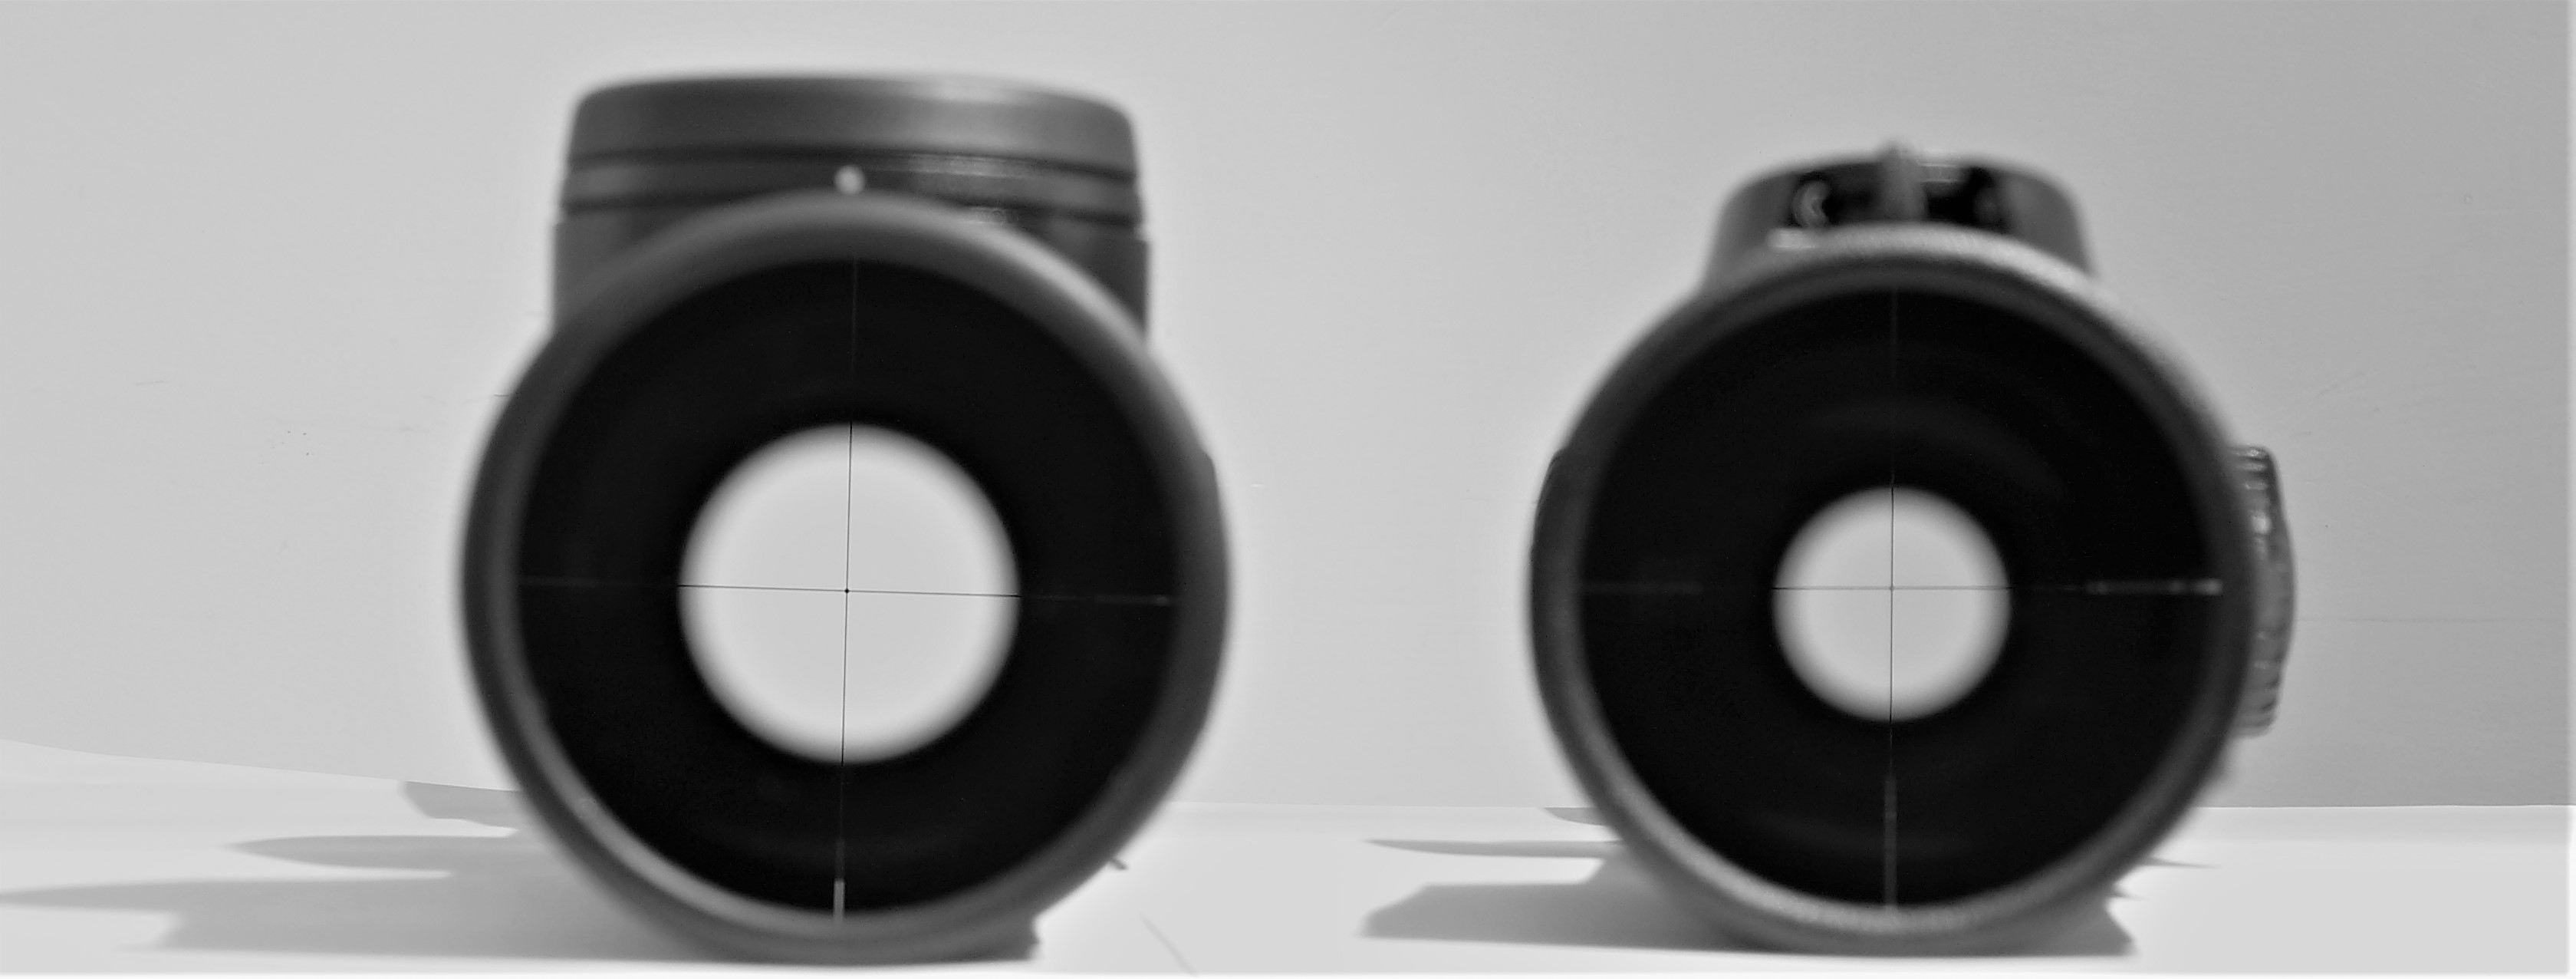 Un'immagine ormai nota, che mostra la pupilla d'uscita del Leica Magnus i 2.4-16x56 a confronto con quella del suo concorrente principale, Swarovski Z8 2.3-18x56. Entrambi a ingrandimento minimo. La differenza è di ben il 53%, a favore del Magnus i, che con 12.4mm di diametro surclassa lo Z8, fermo a 8.1mm (dati da catalogo dei produttori). La stessa proporzione vale su tutti i modelli Magnus -Z8 di ingrandimento e diametro dell'obiettivo comparabili.